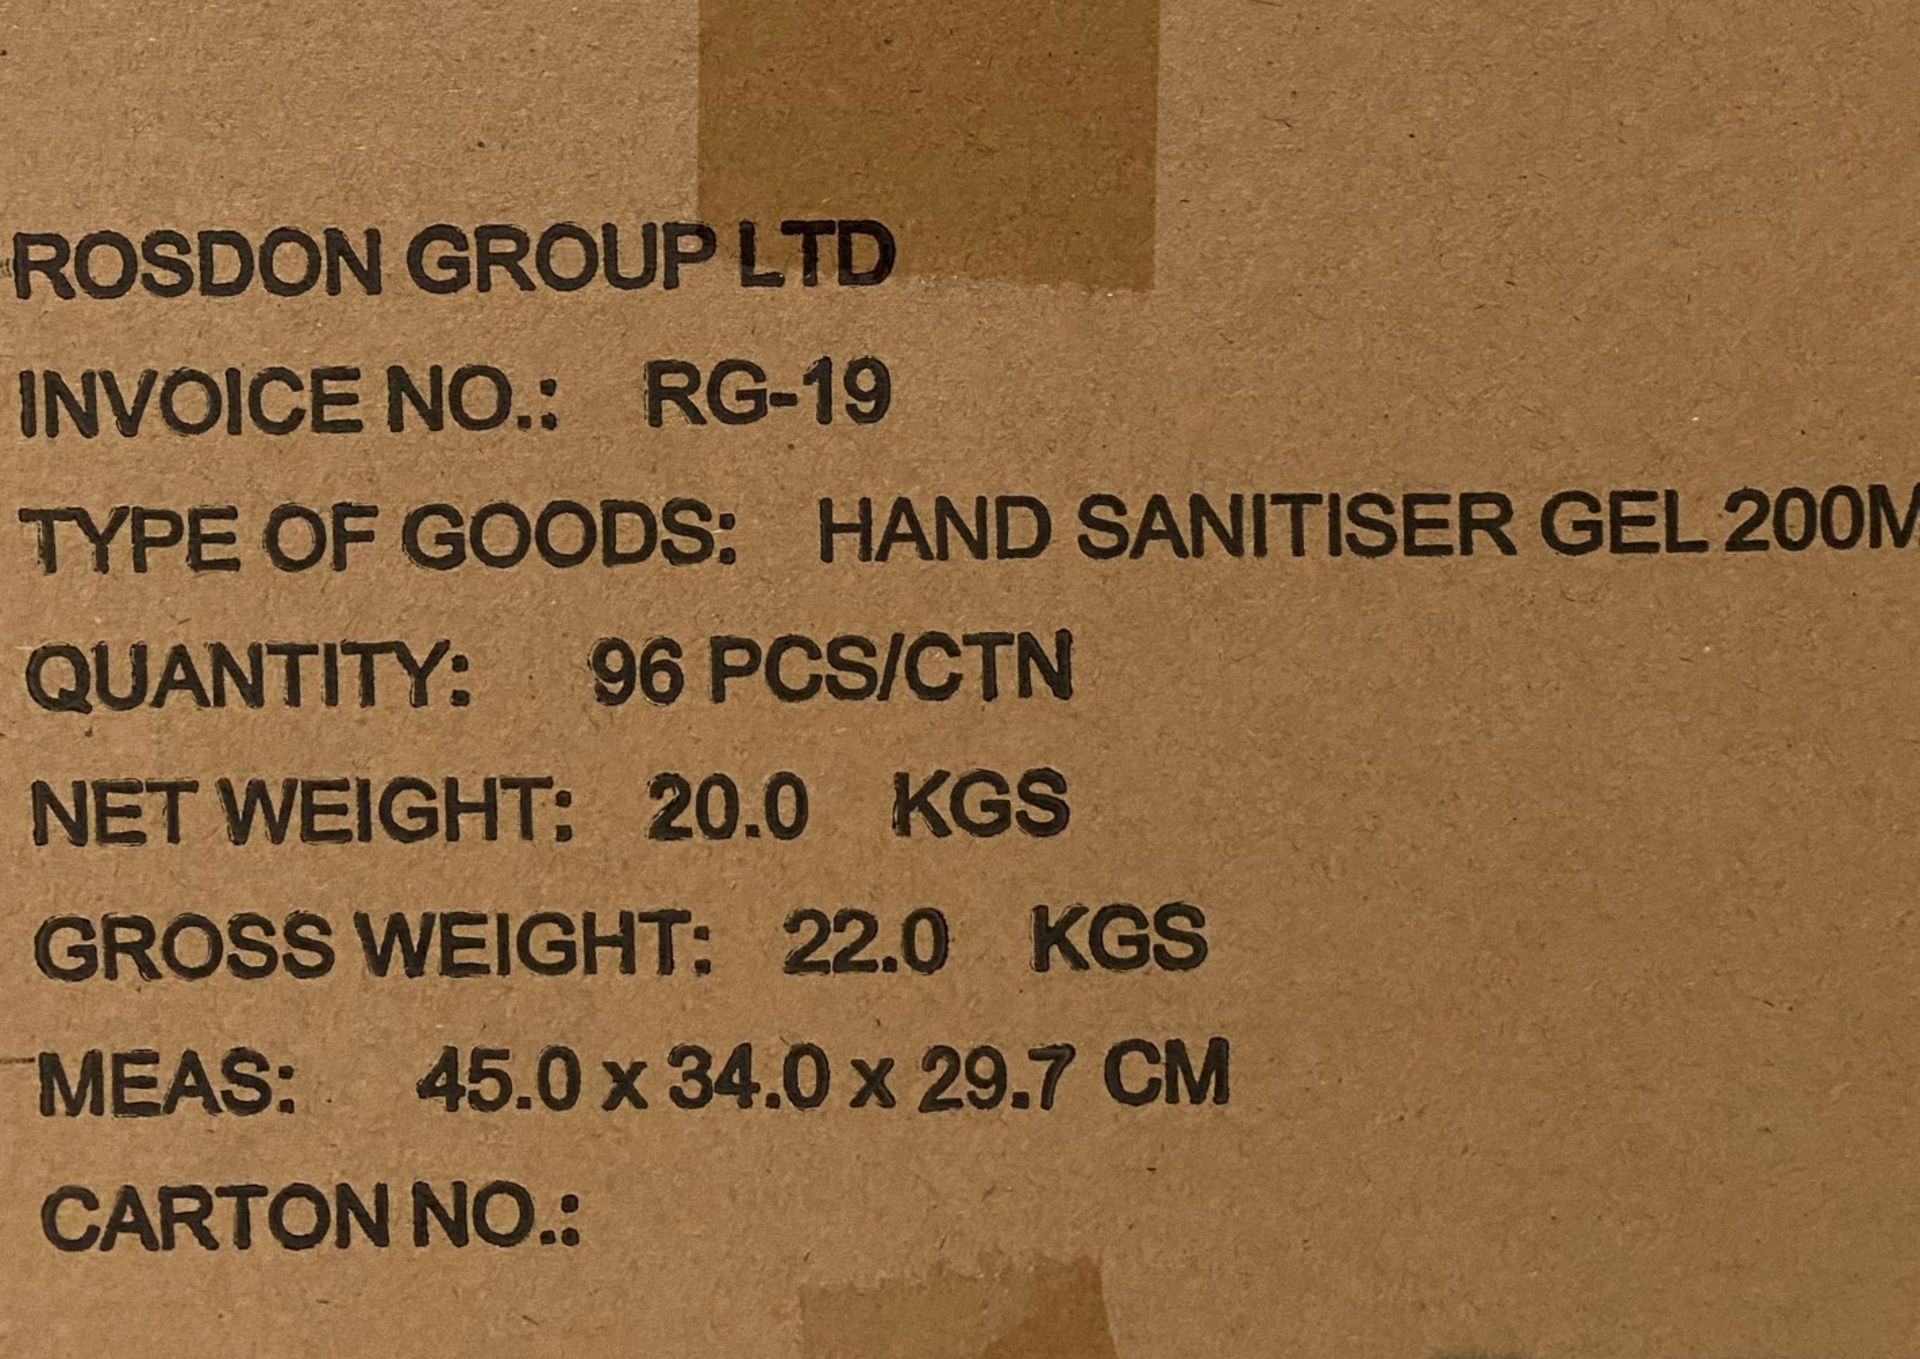 96 x 200ml flip top bottles of Rosdon Group UK hand sanitiser - 1 outer box. - Image 5 of 5